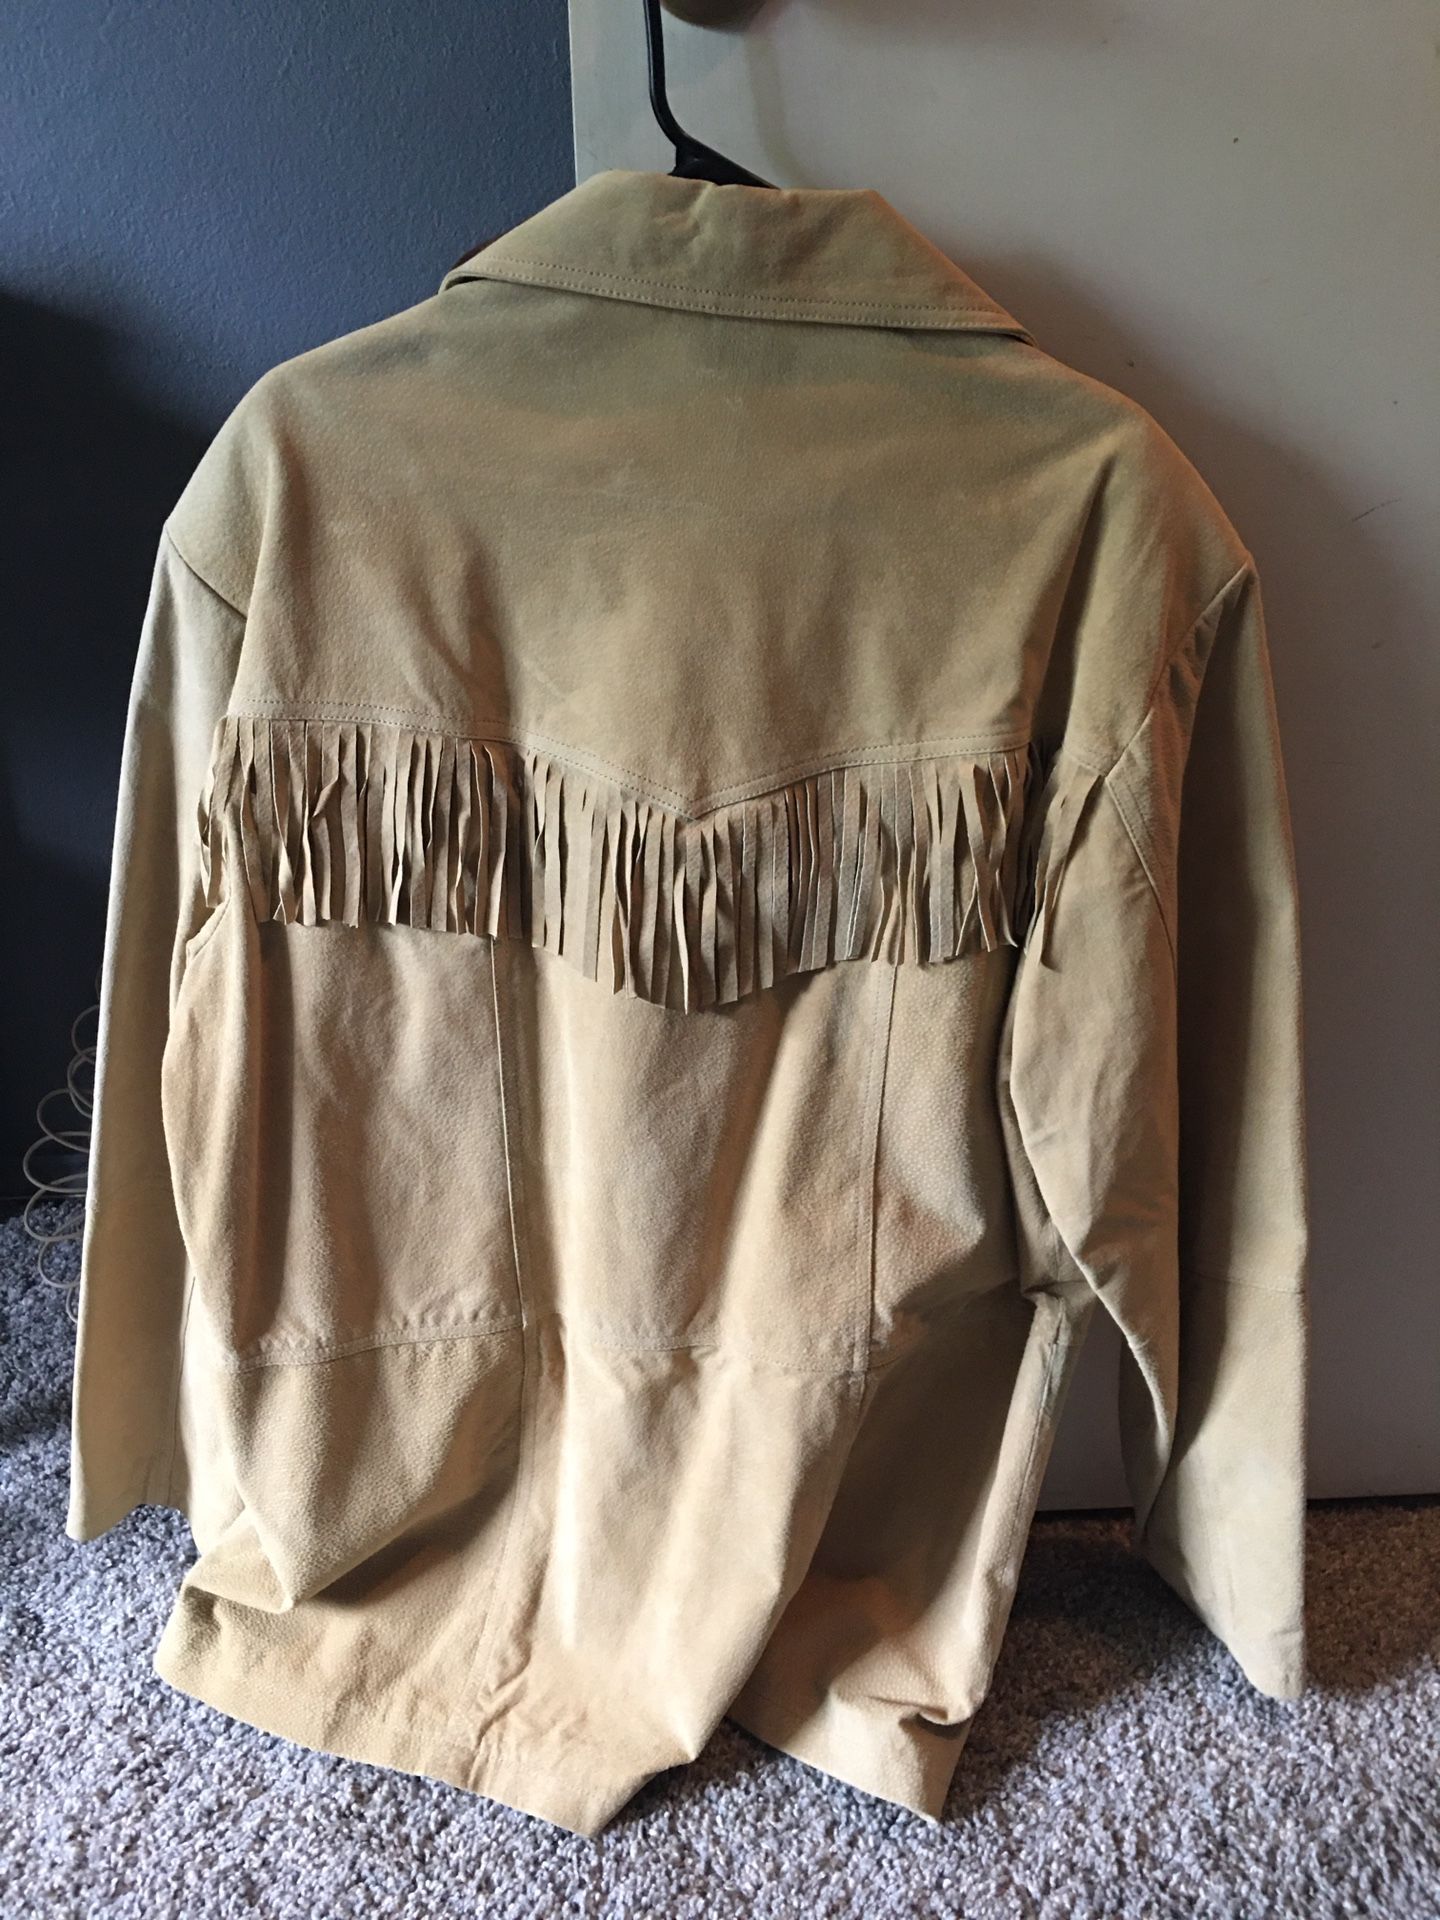 Leather fringe jacket